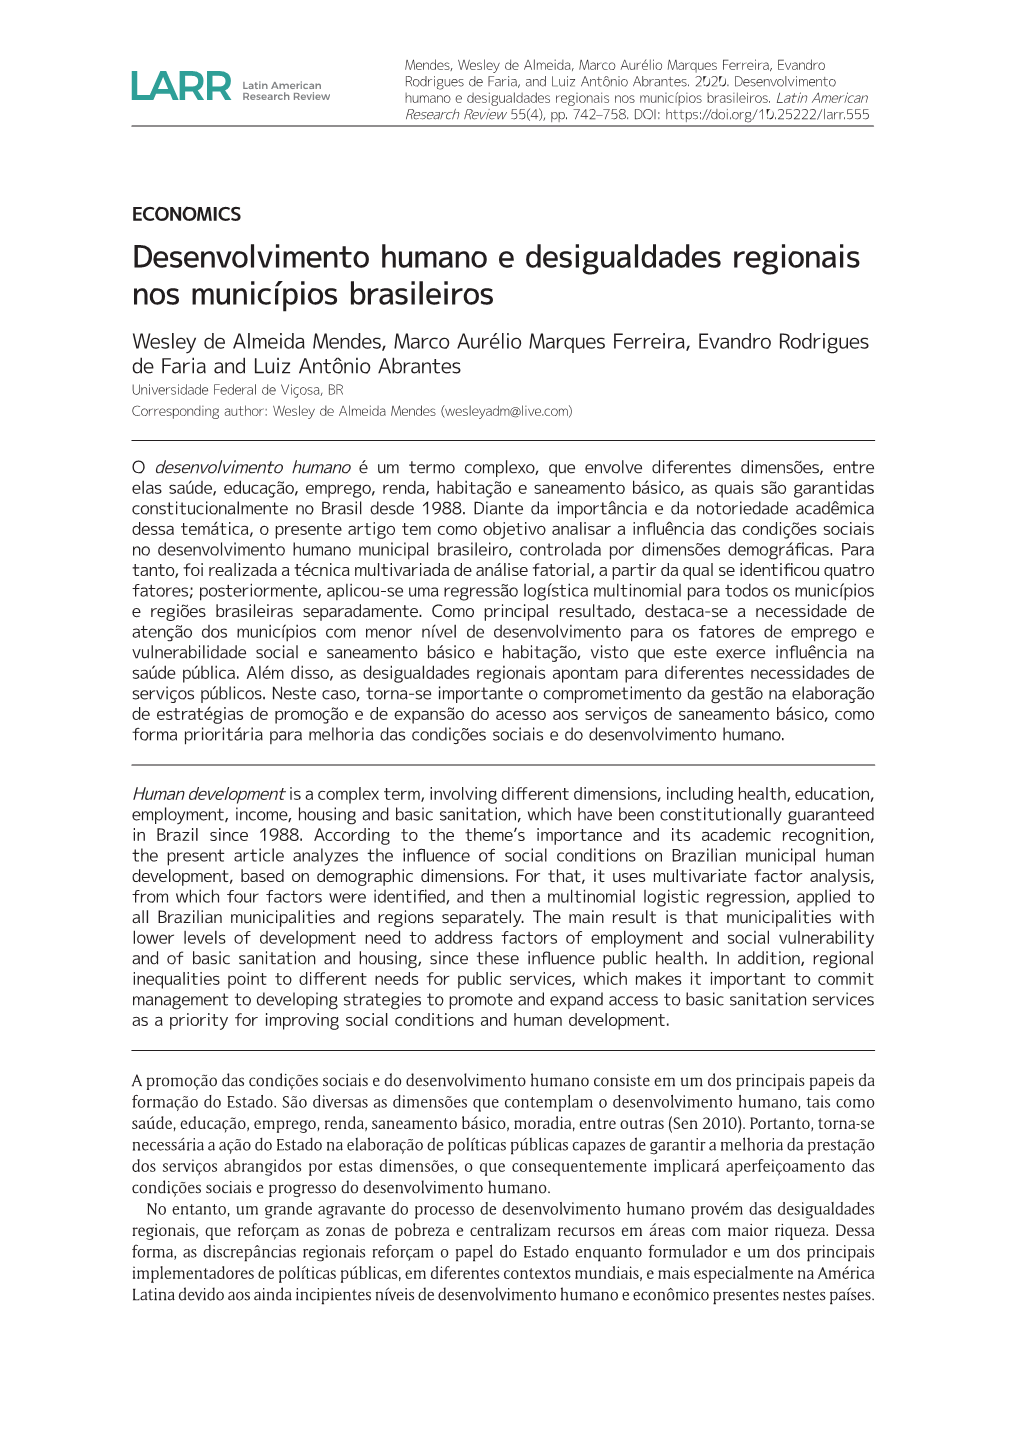 Desenvolvimento Humano E Desigualdades Regionais Nos Municípios Brasileiros